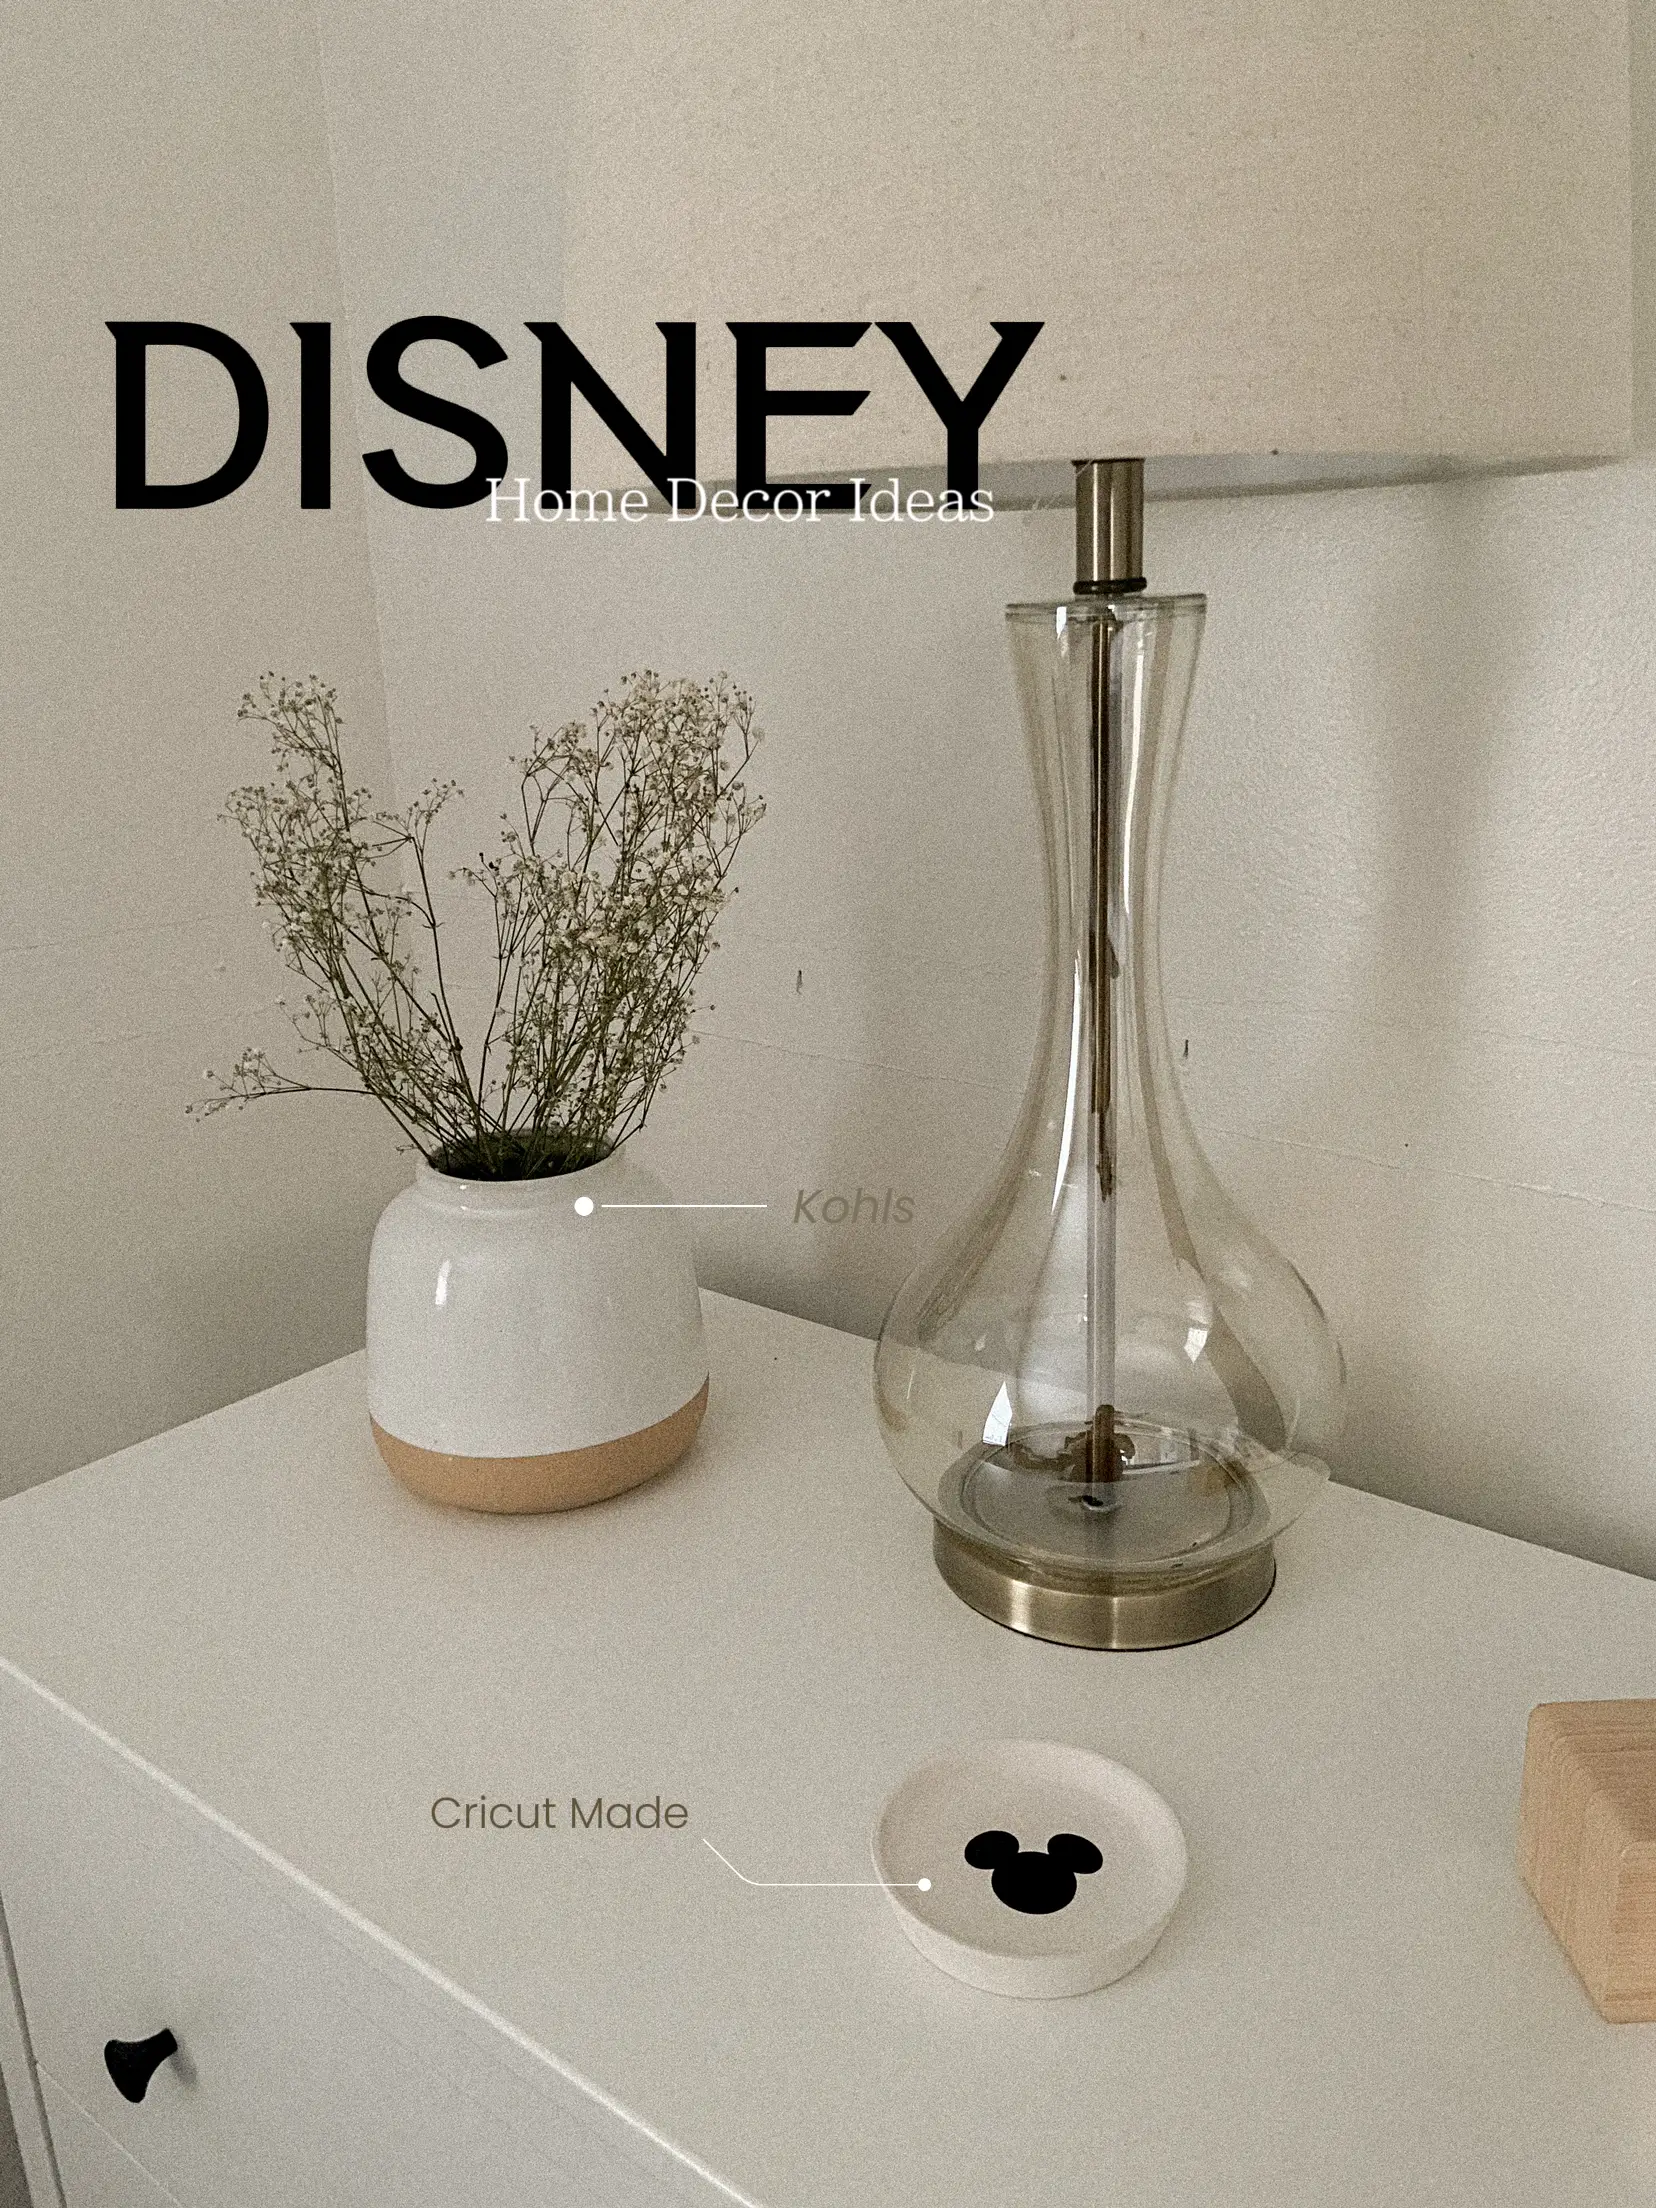 Disney Home Decor Ideas for the Disney Home